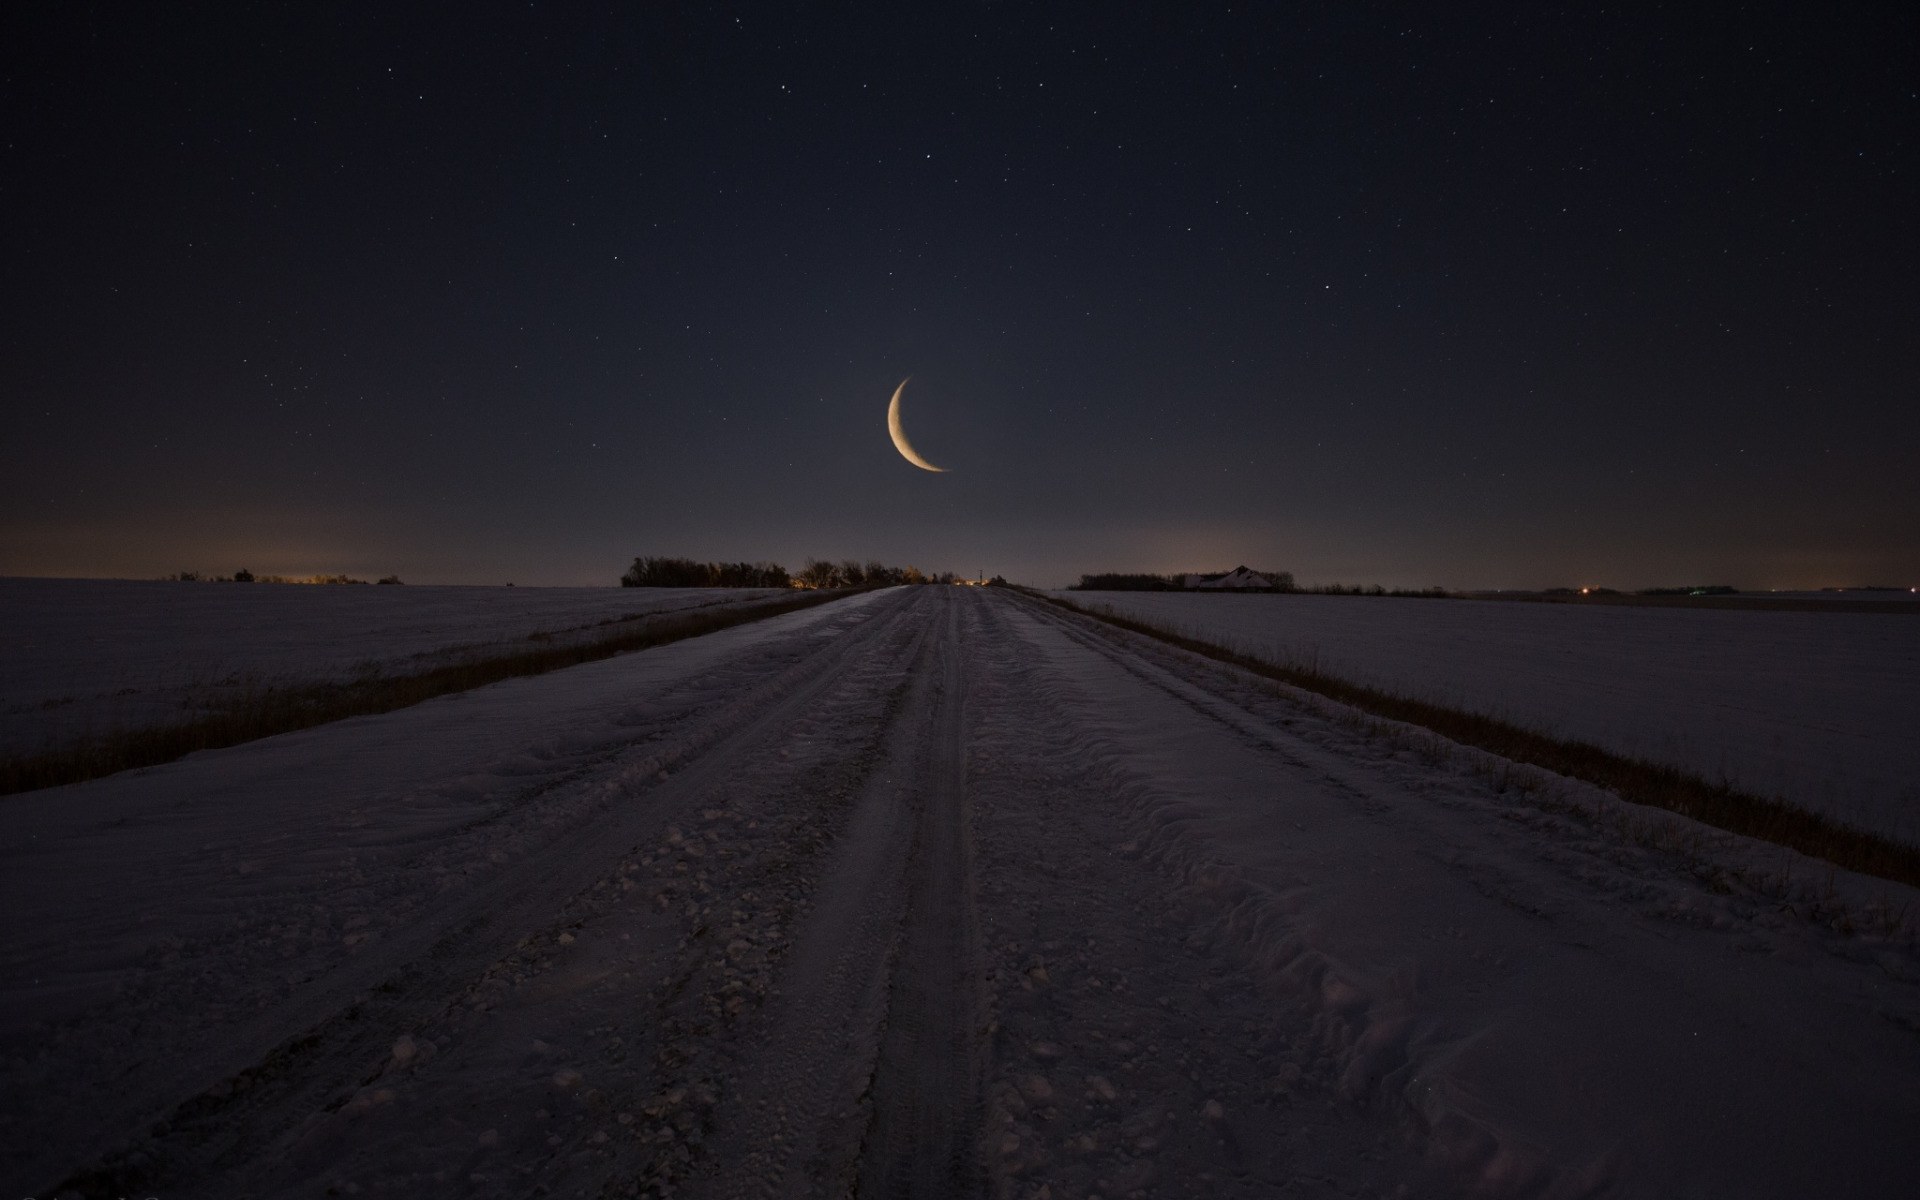 Долгая дорога и луна. Снежная дорога в поле. Караван пол Луни. Торговец мечтой в поле под луной.